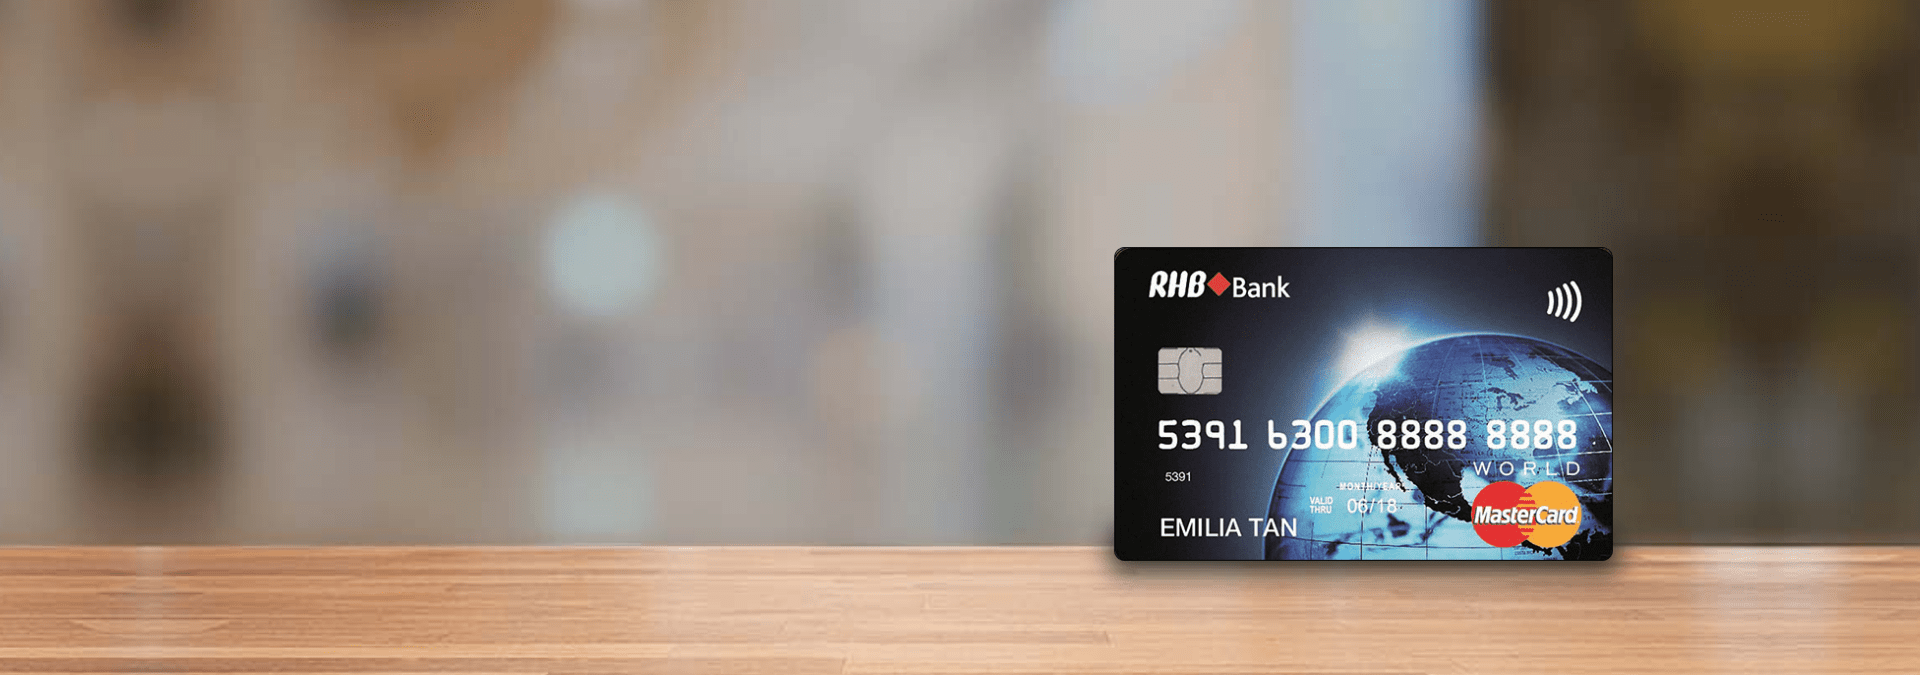 rhb-world-mastercard-credit-card-banner